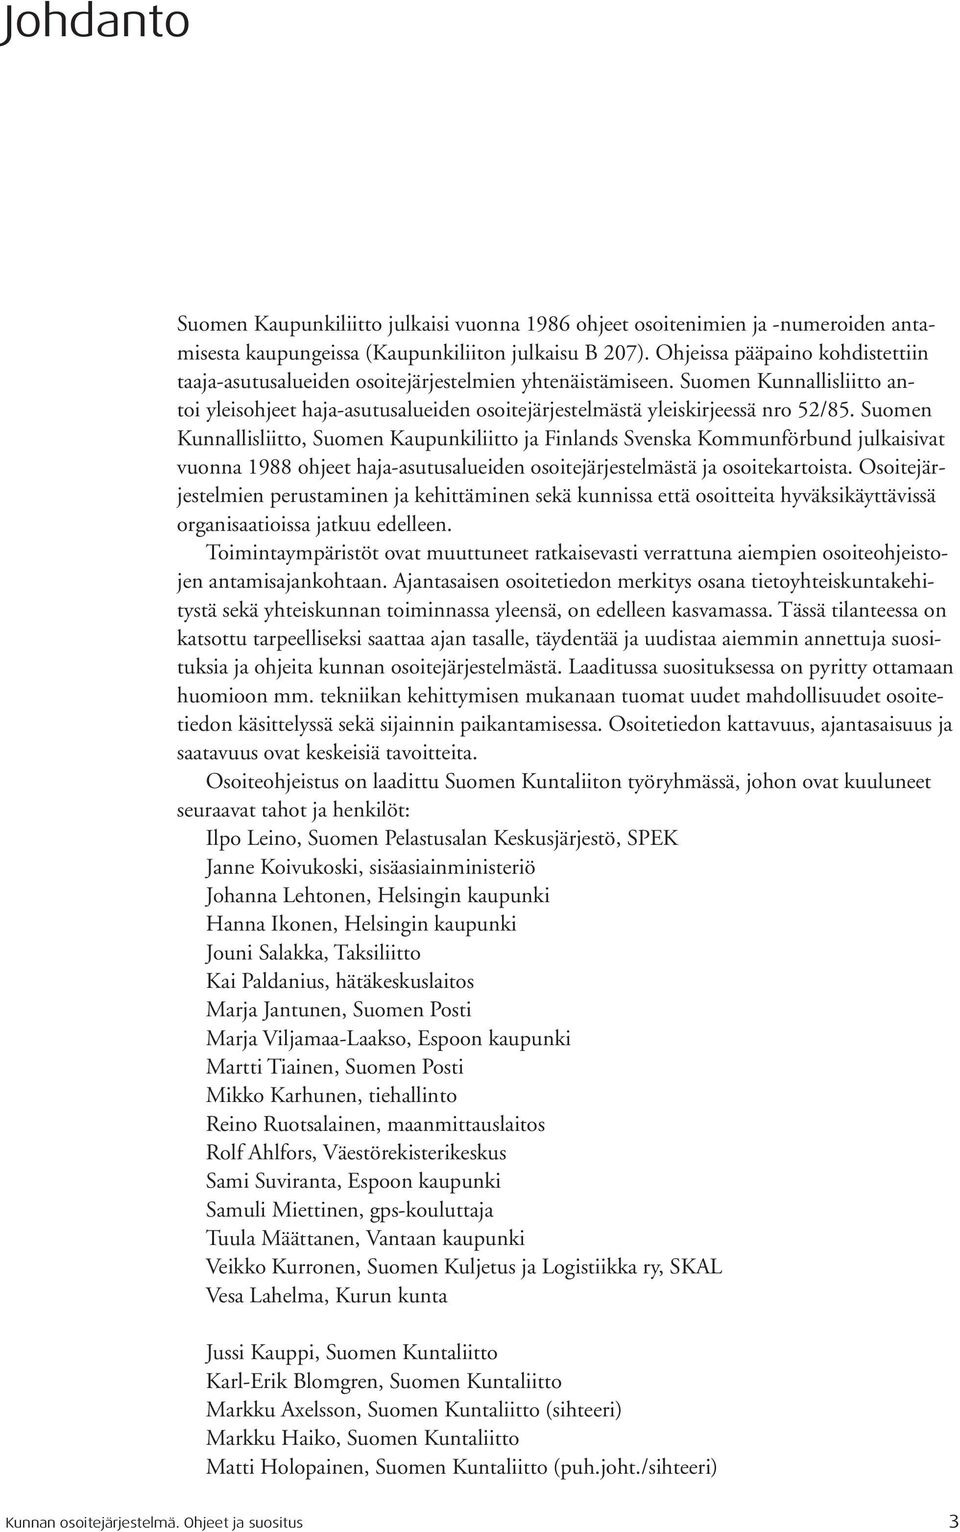 Suomen Kunnallisliitto, Suomen Kaupunkiliitto ja Finlands Svenska Kommunförbund julkaisivat vuonna 1988 ohjeet haja-asutusalueiden osoitejärjestelmästä ja osoitekartoista.